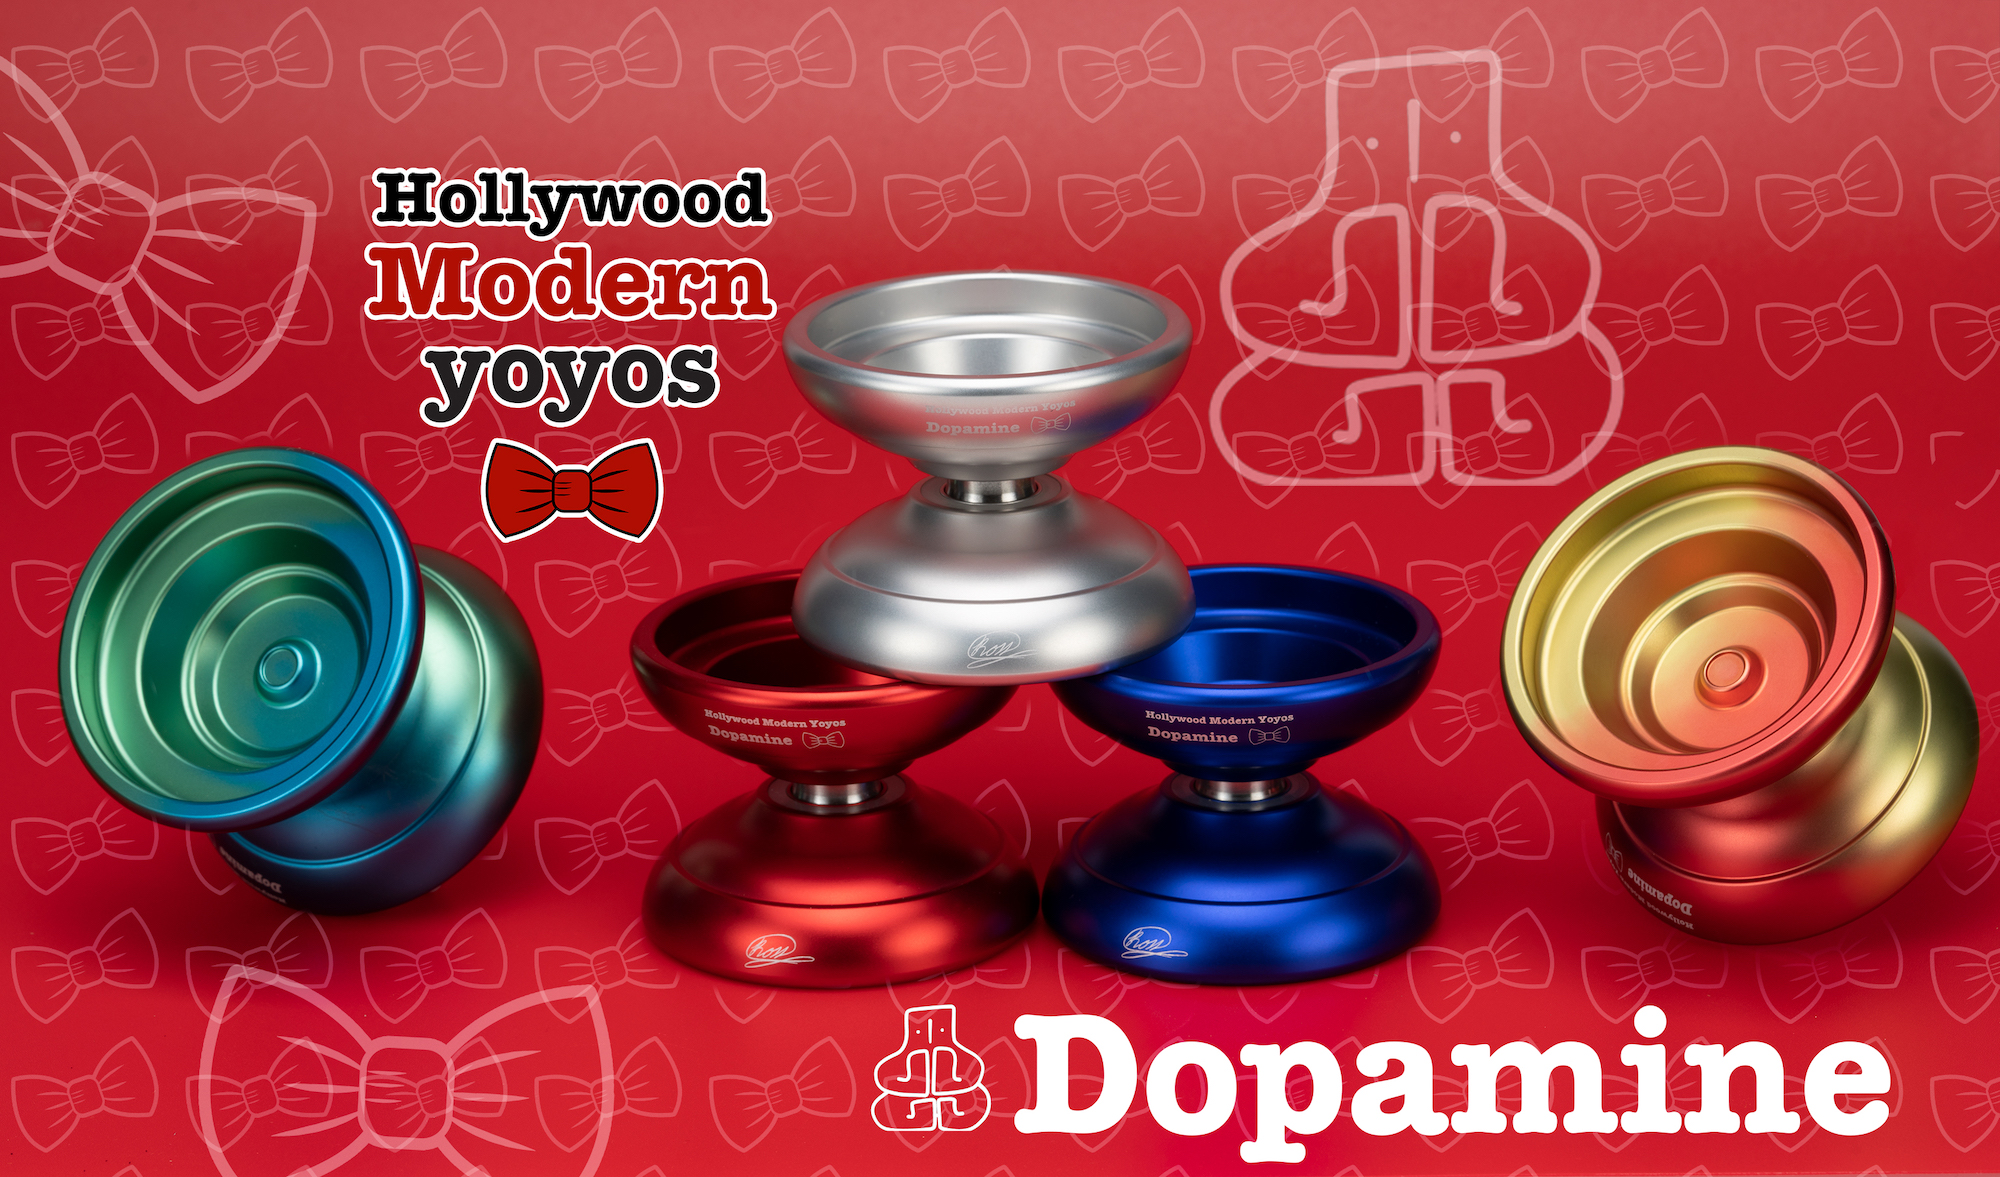 Dopamine by Hollywood Modern YoYos